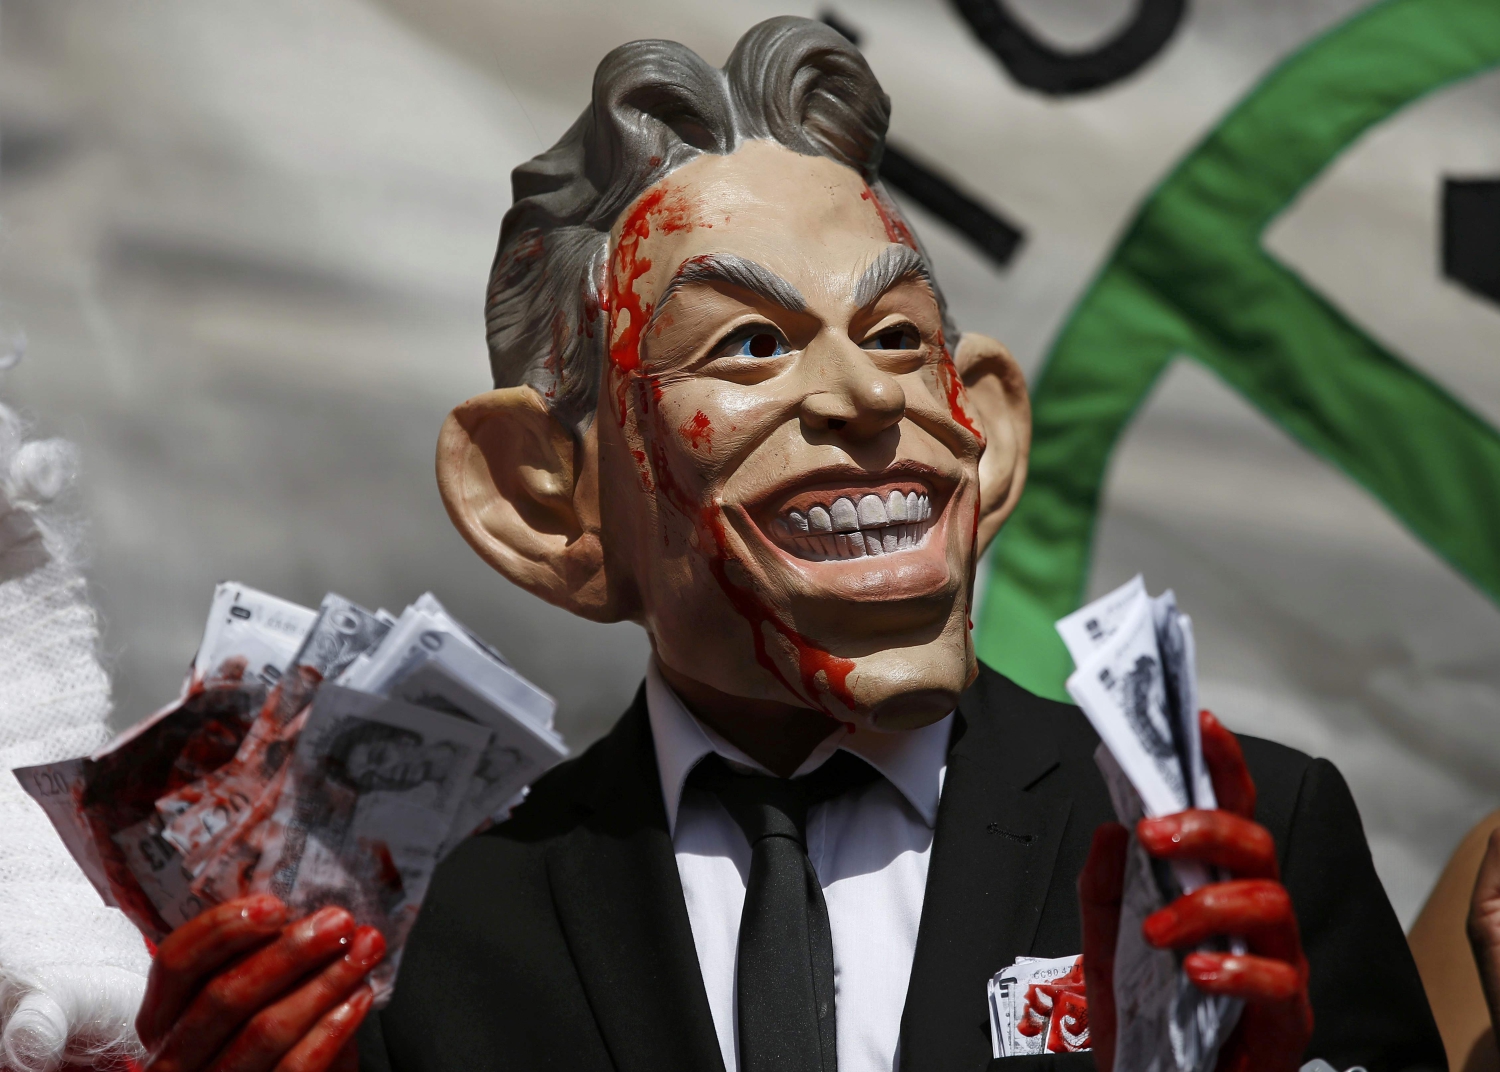 Tony Blair decidió invadir Irak sin agotar todas las opciones pacíficas